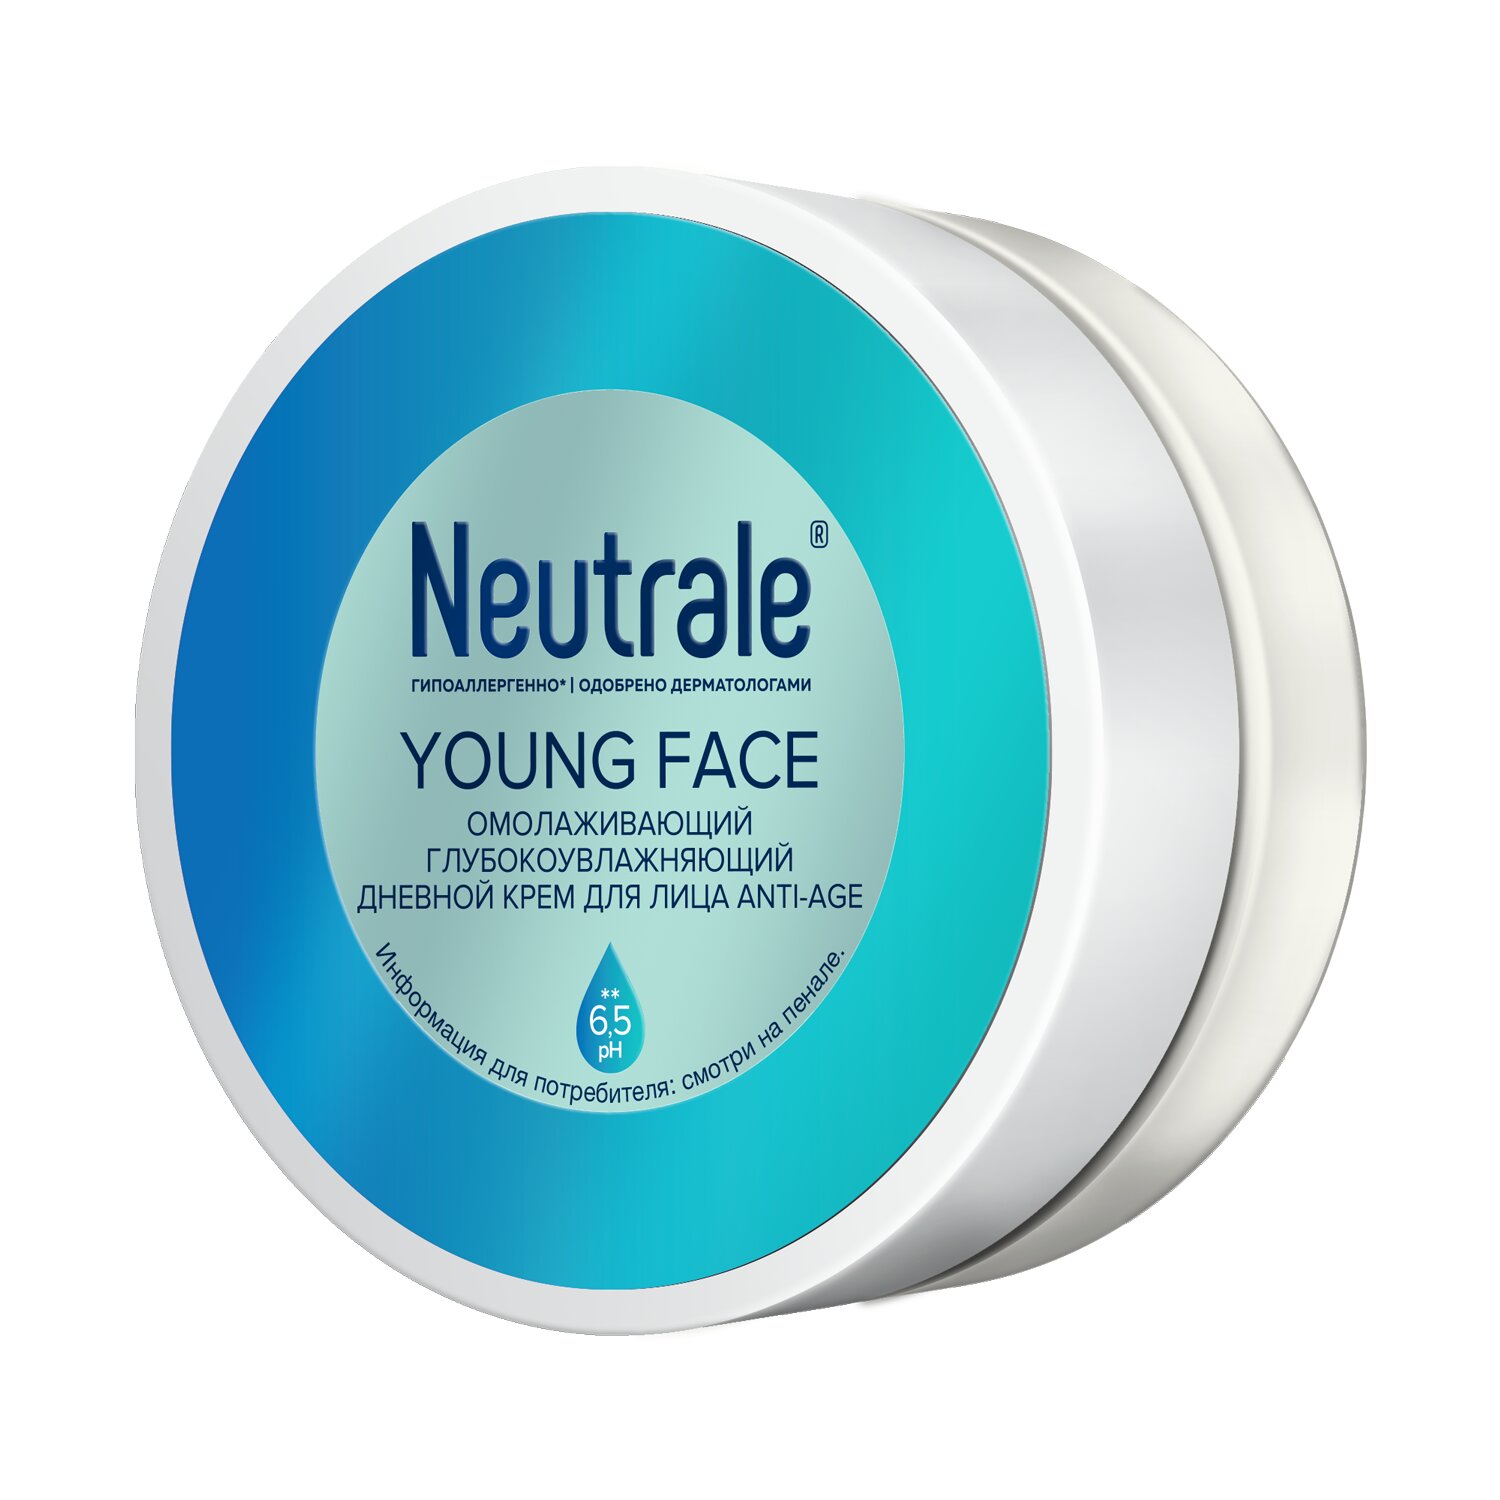 Купить Neutrale Омолаживающий глубоко увлажняющий дневной крем для лица Anti-Age, 50 мл (Neutrale, Для кожи лица, шеи, зоны декольте и рук)